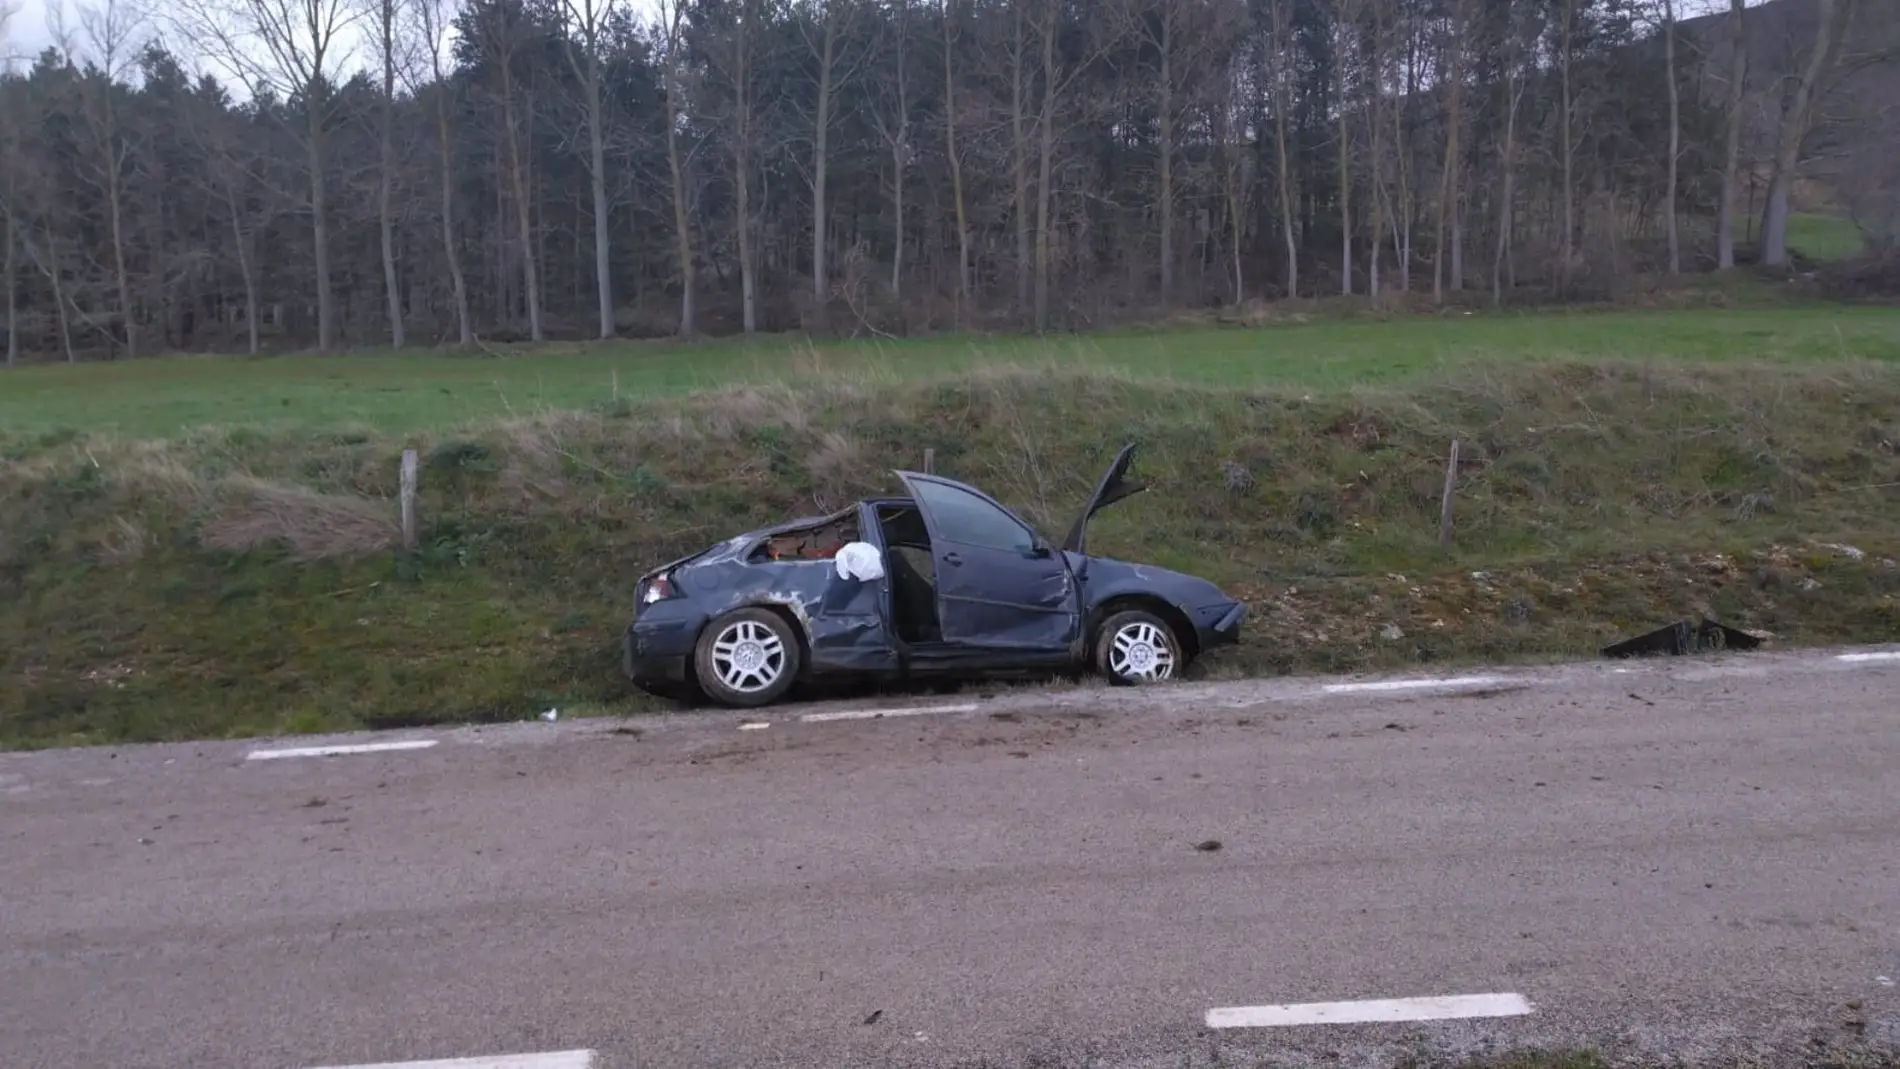 Una joven de 21 años, en estado grado grave tras sufrir un accidente en coche en Valderredible